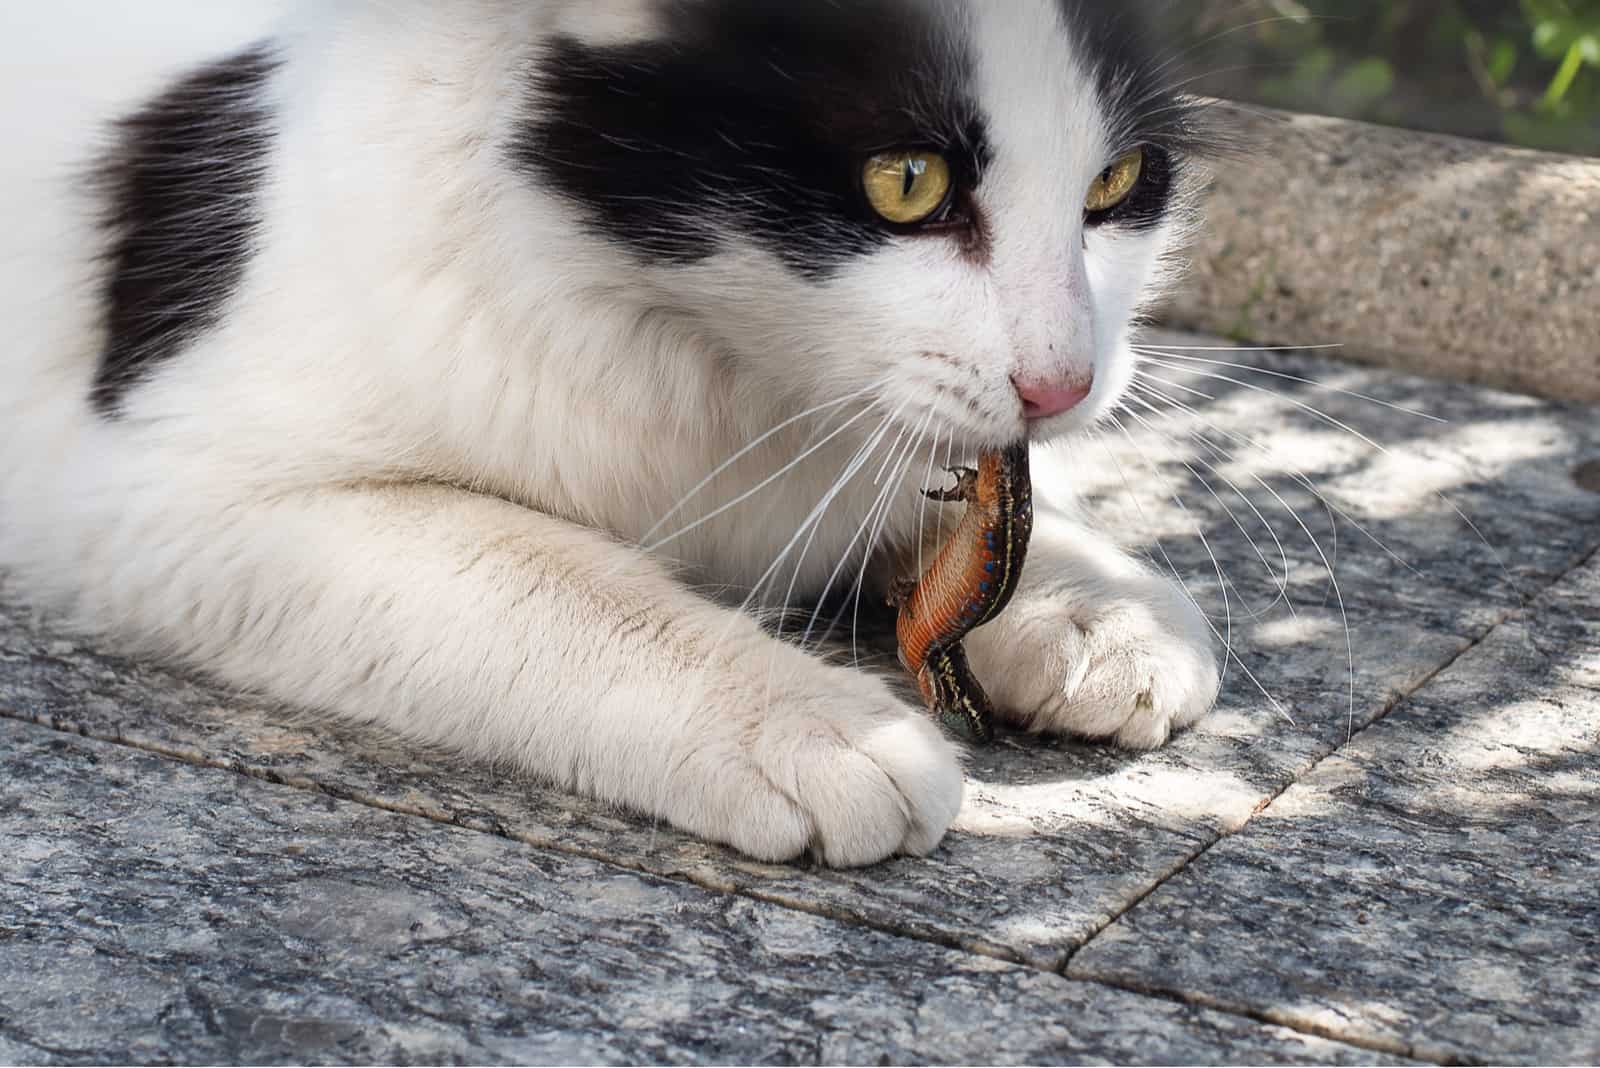 Cat eating lizard outdoor